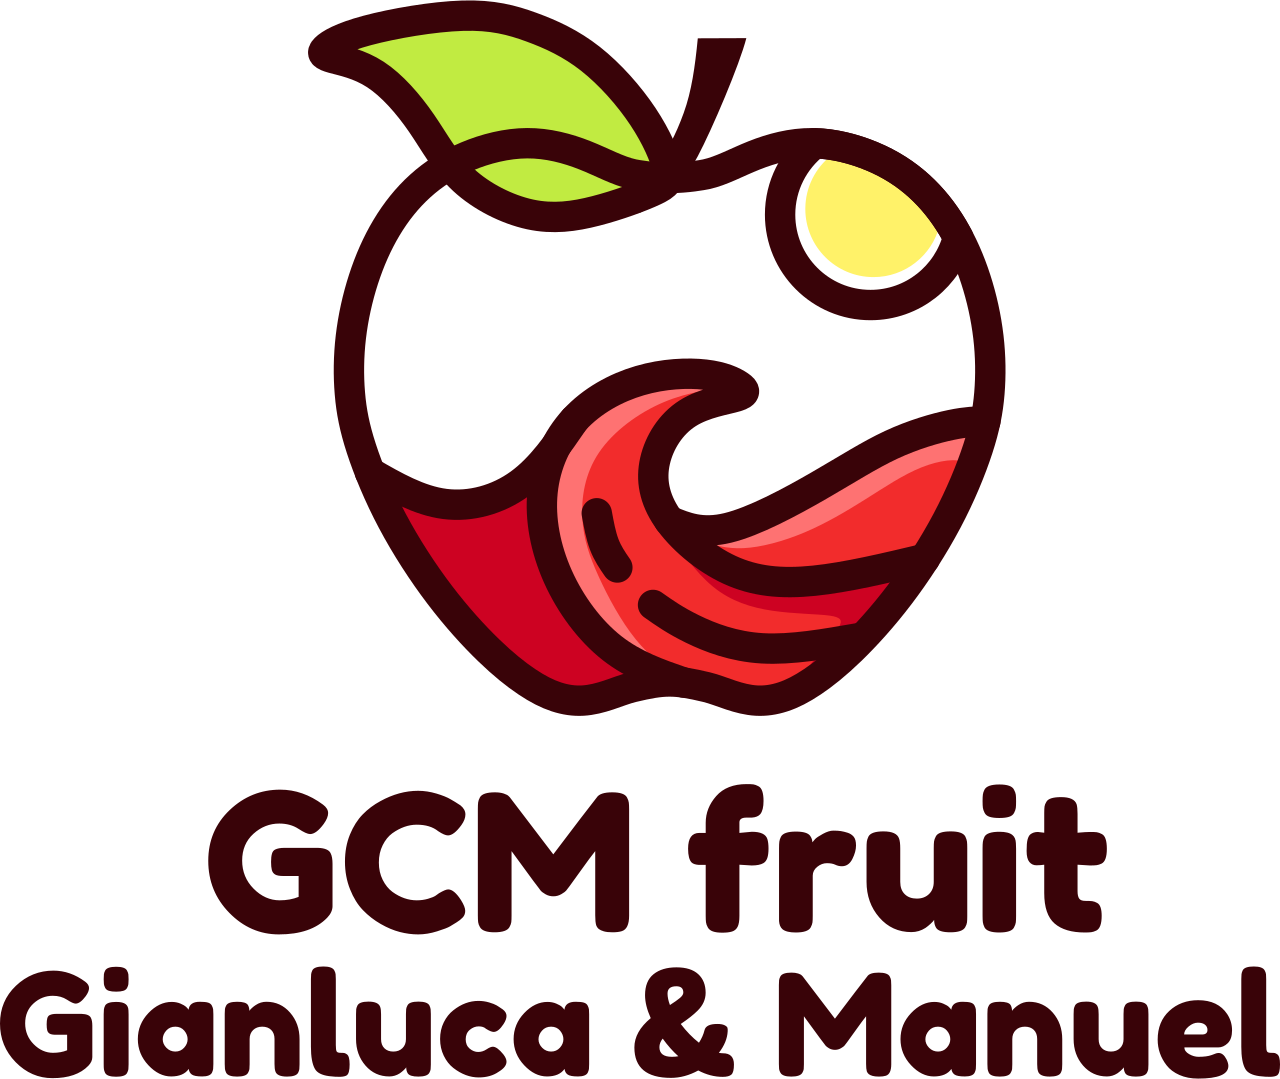 GCM fruit's web page